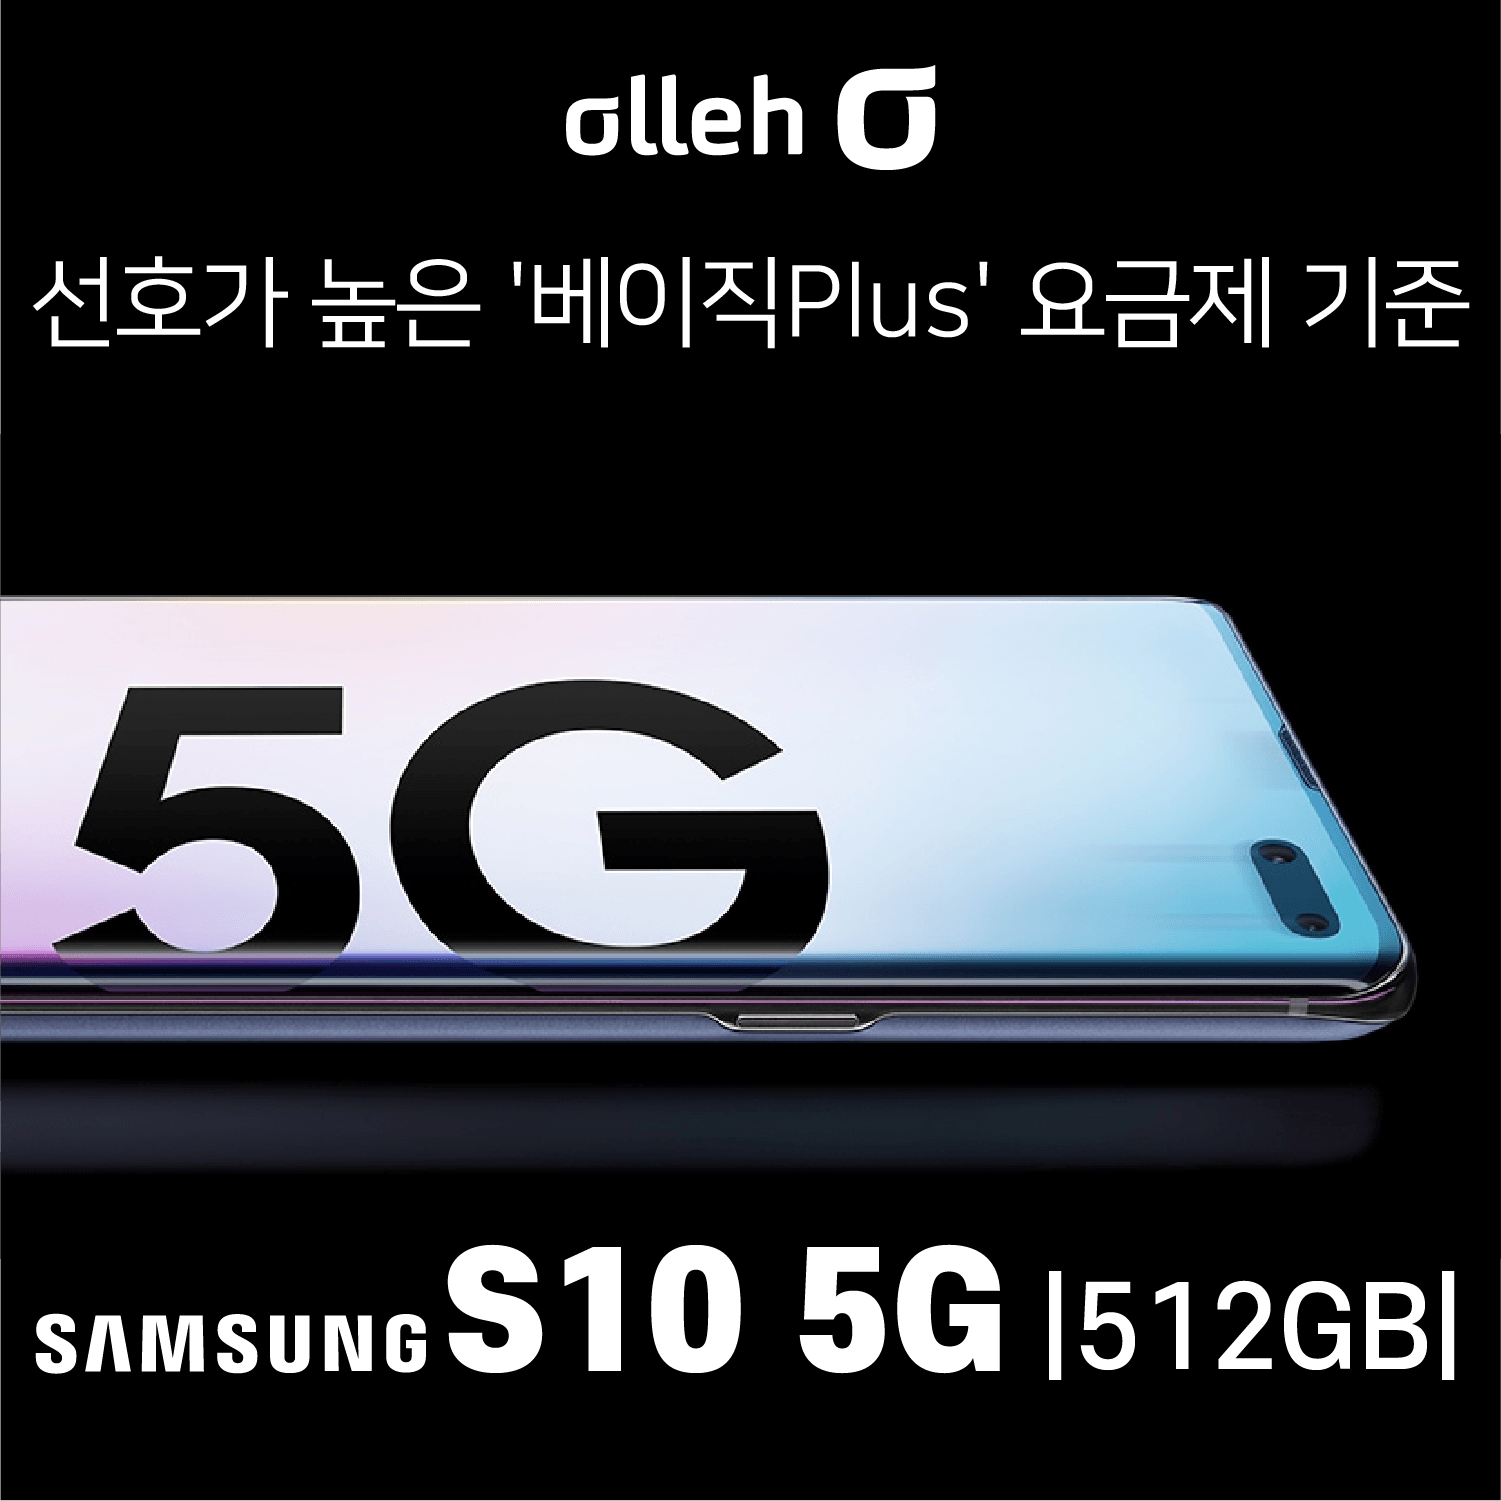 KT 삼성 S10. 5G. 512GB _ 가장 인기 많은 베이직 요금제 선택인데 이 가격이라고!, 기기변경, S10. 5G/ 512GB 